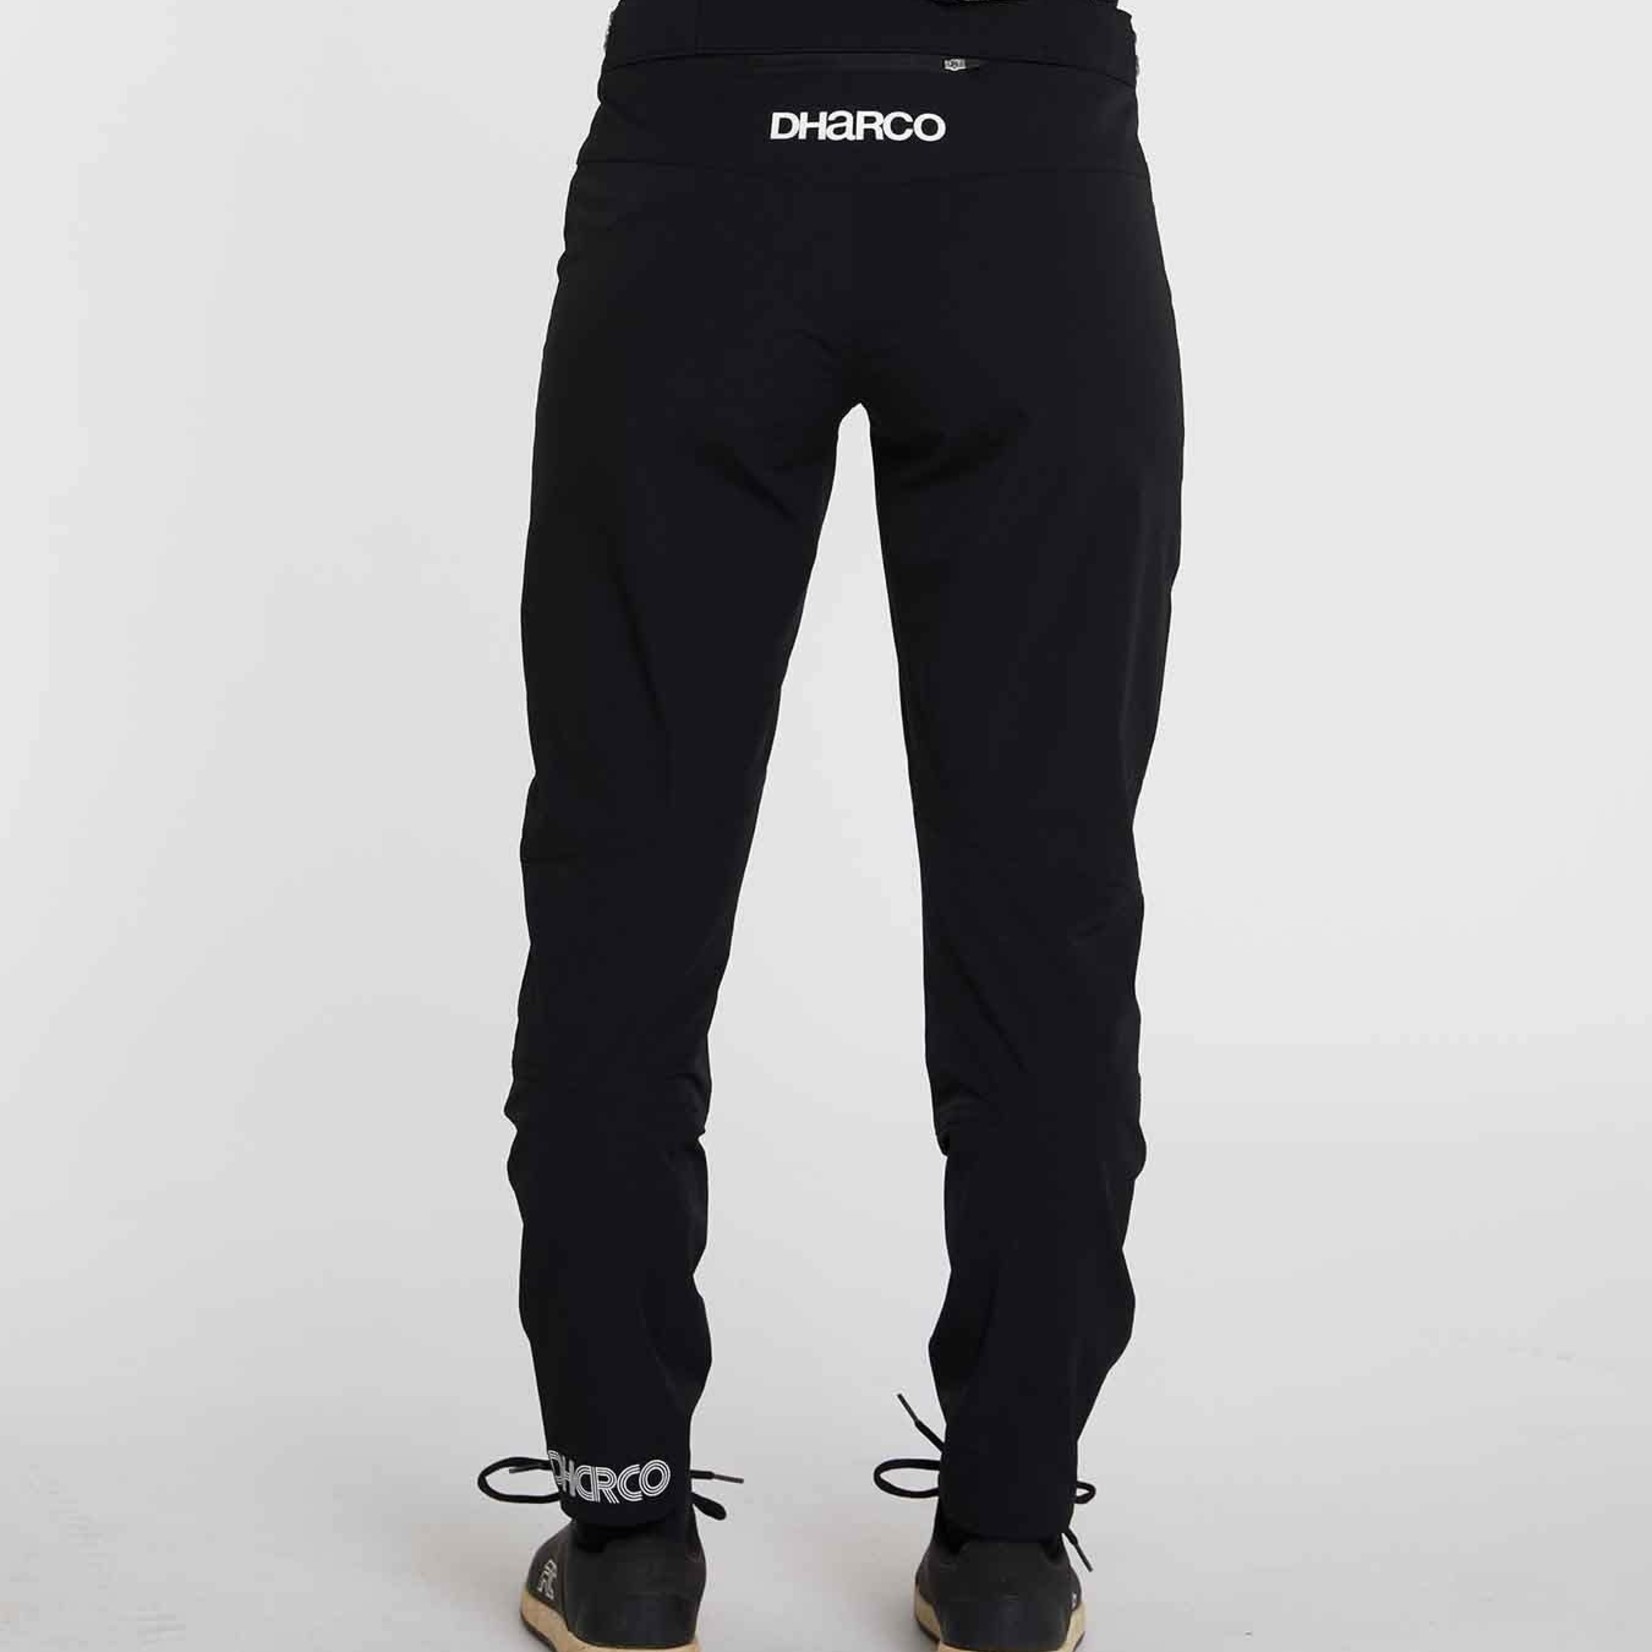 DHaRCO DHaRCO Womens Gravity Pants Black XL